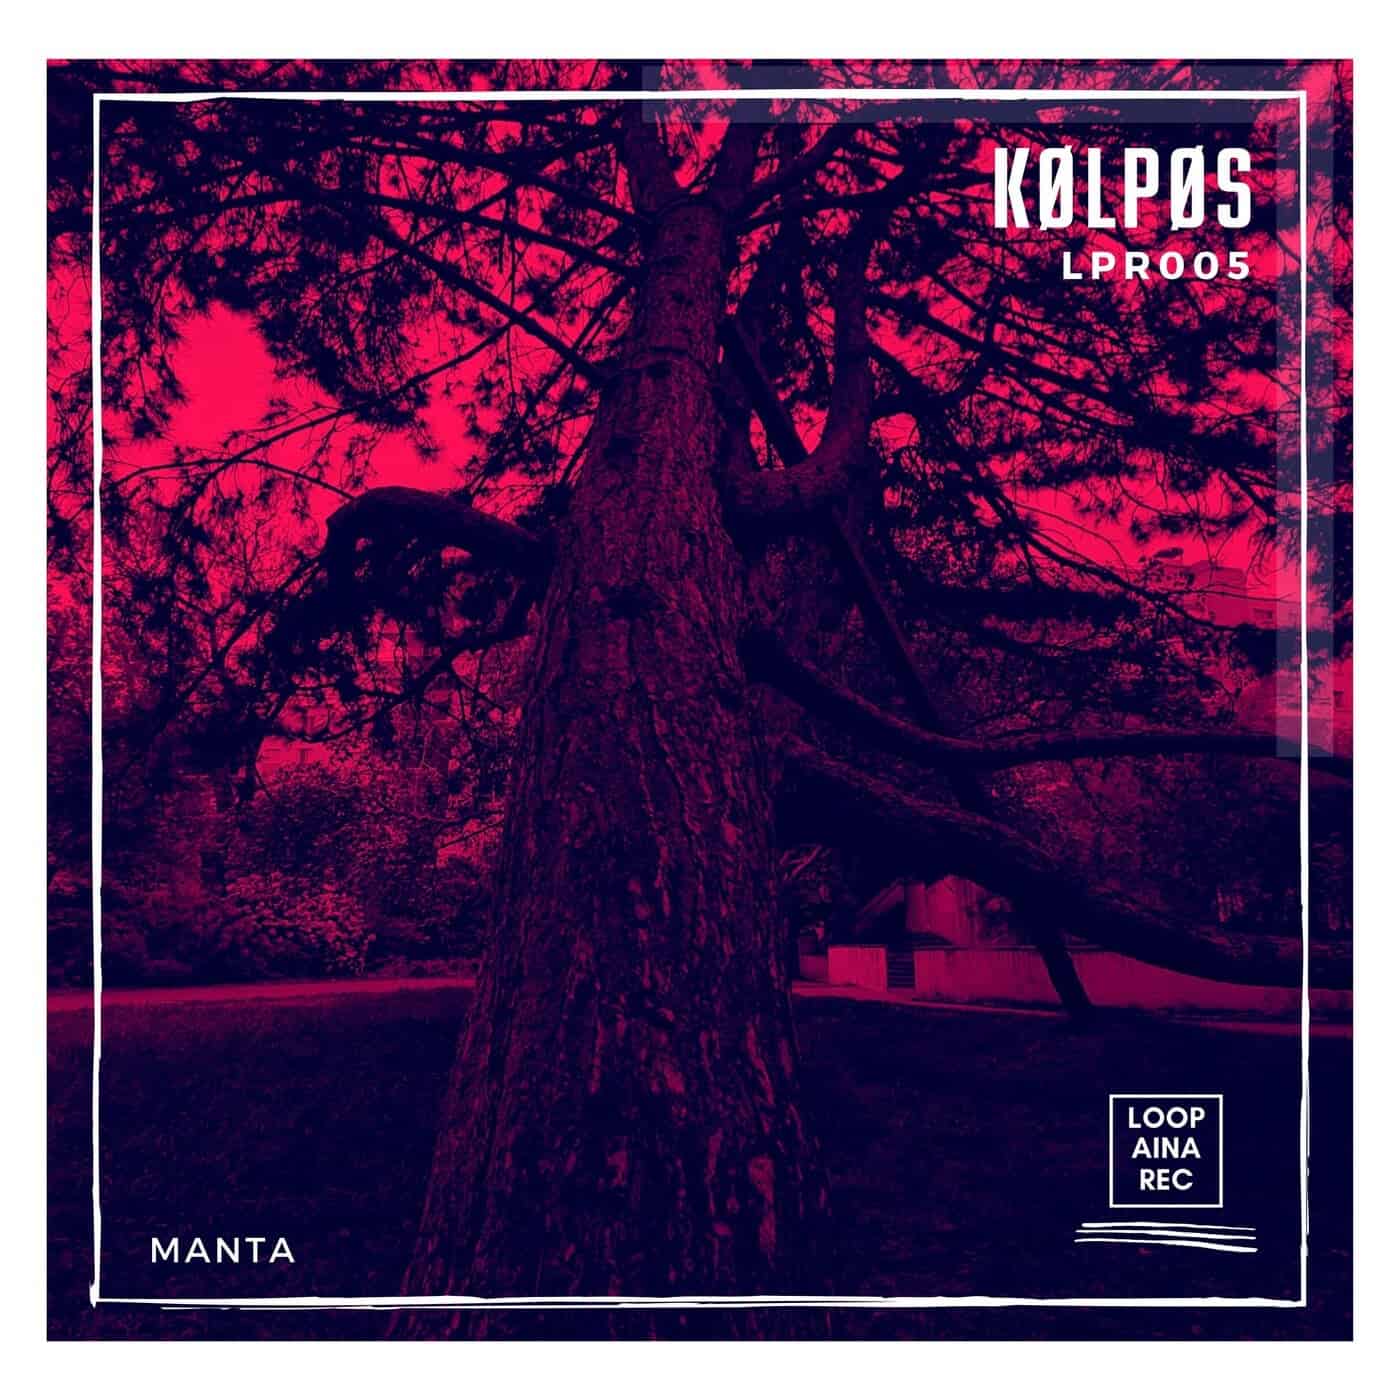 Download KØLPØS - Manta on Electrobuzz